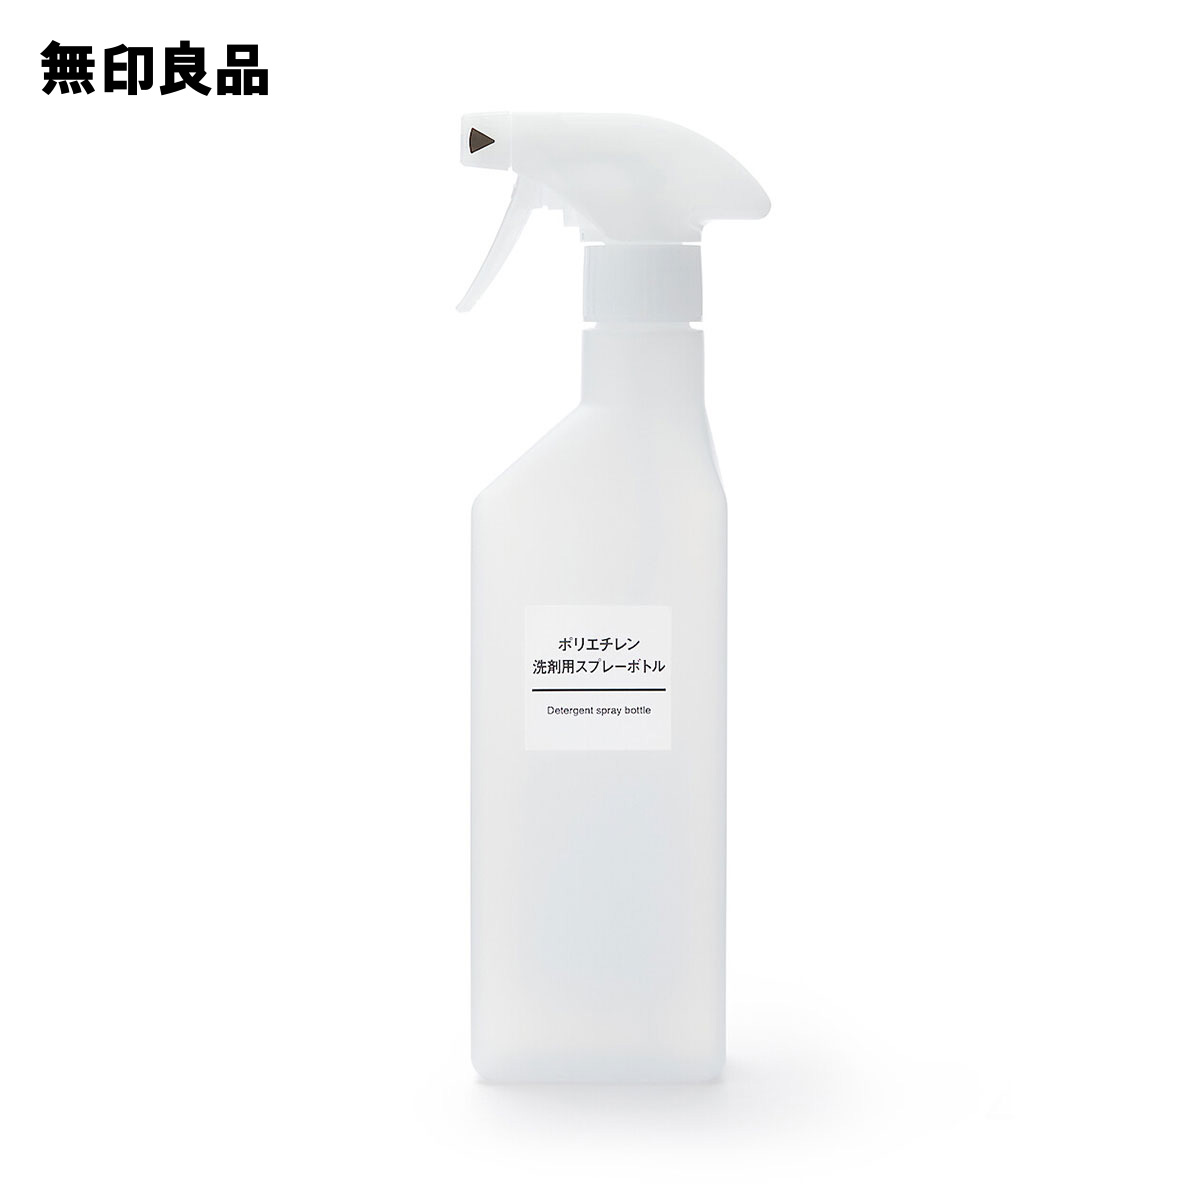 【無印良品 公式】ポリエチレン洗剤用スプレーボトル 約500ml用・逆さ噴射可能トリガー